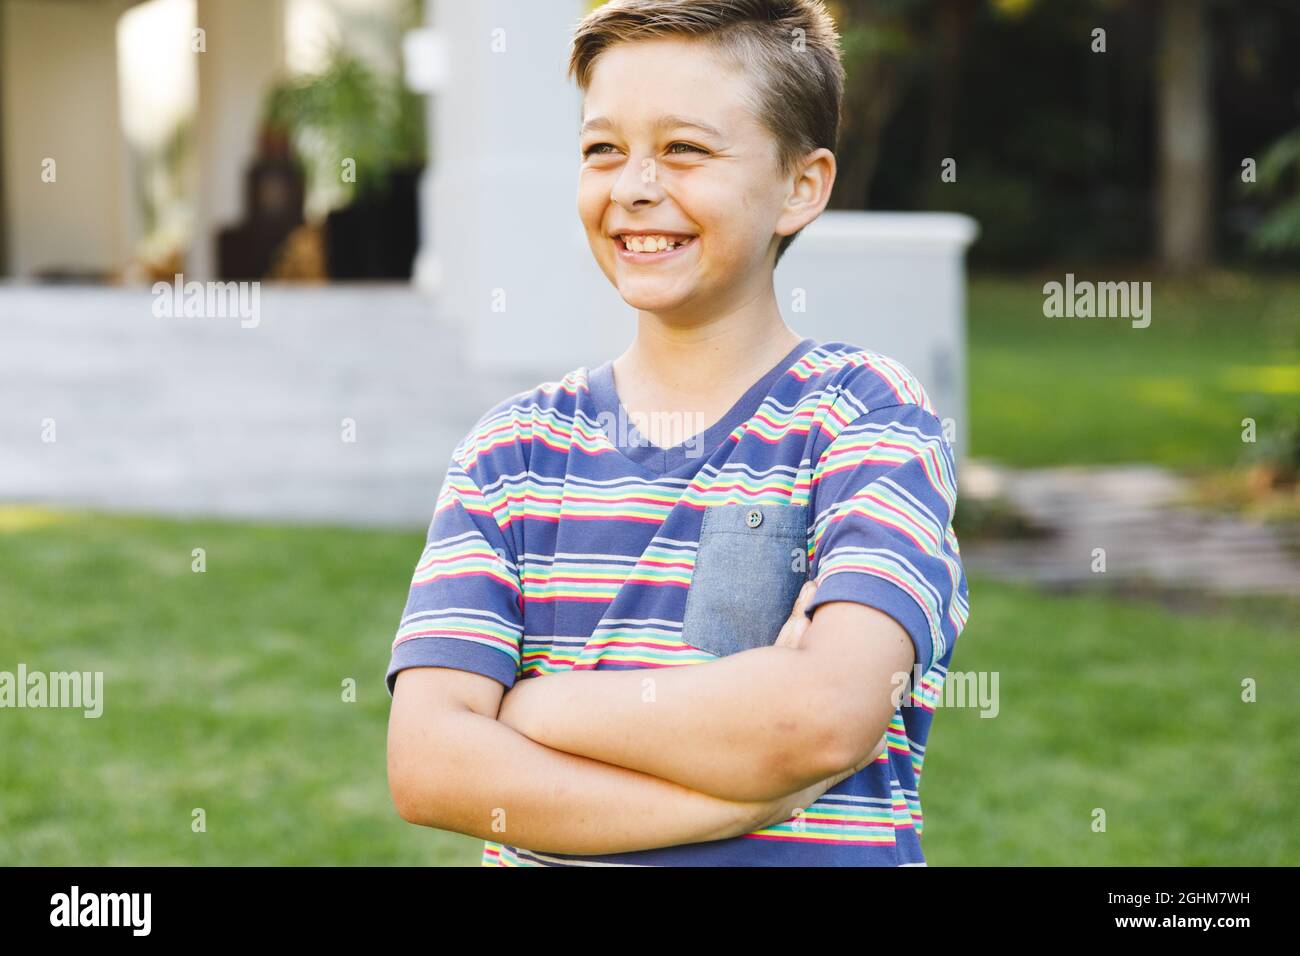 Lächelnder kaukasischer Junge vor dem Haus, der im Garten von der Kamera wegschaute Stockfoto